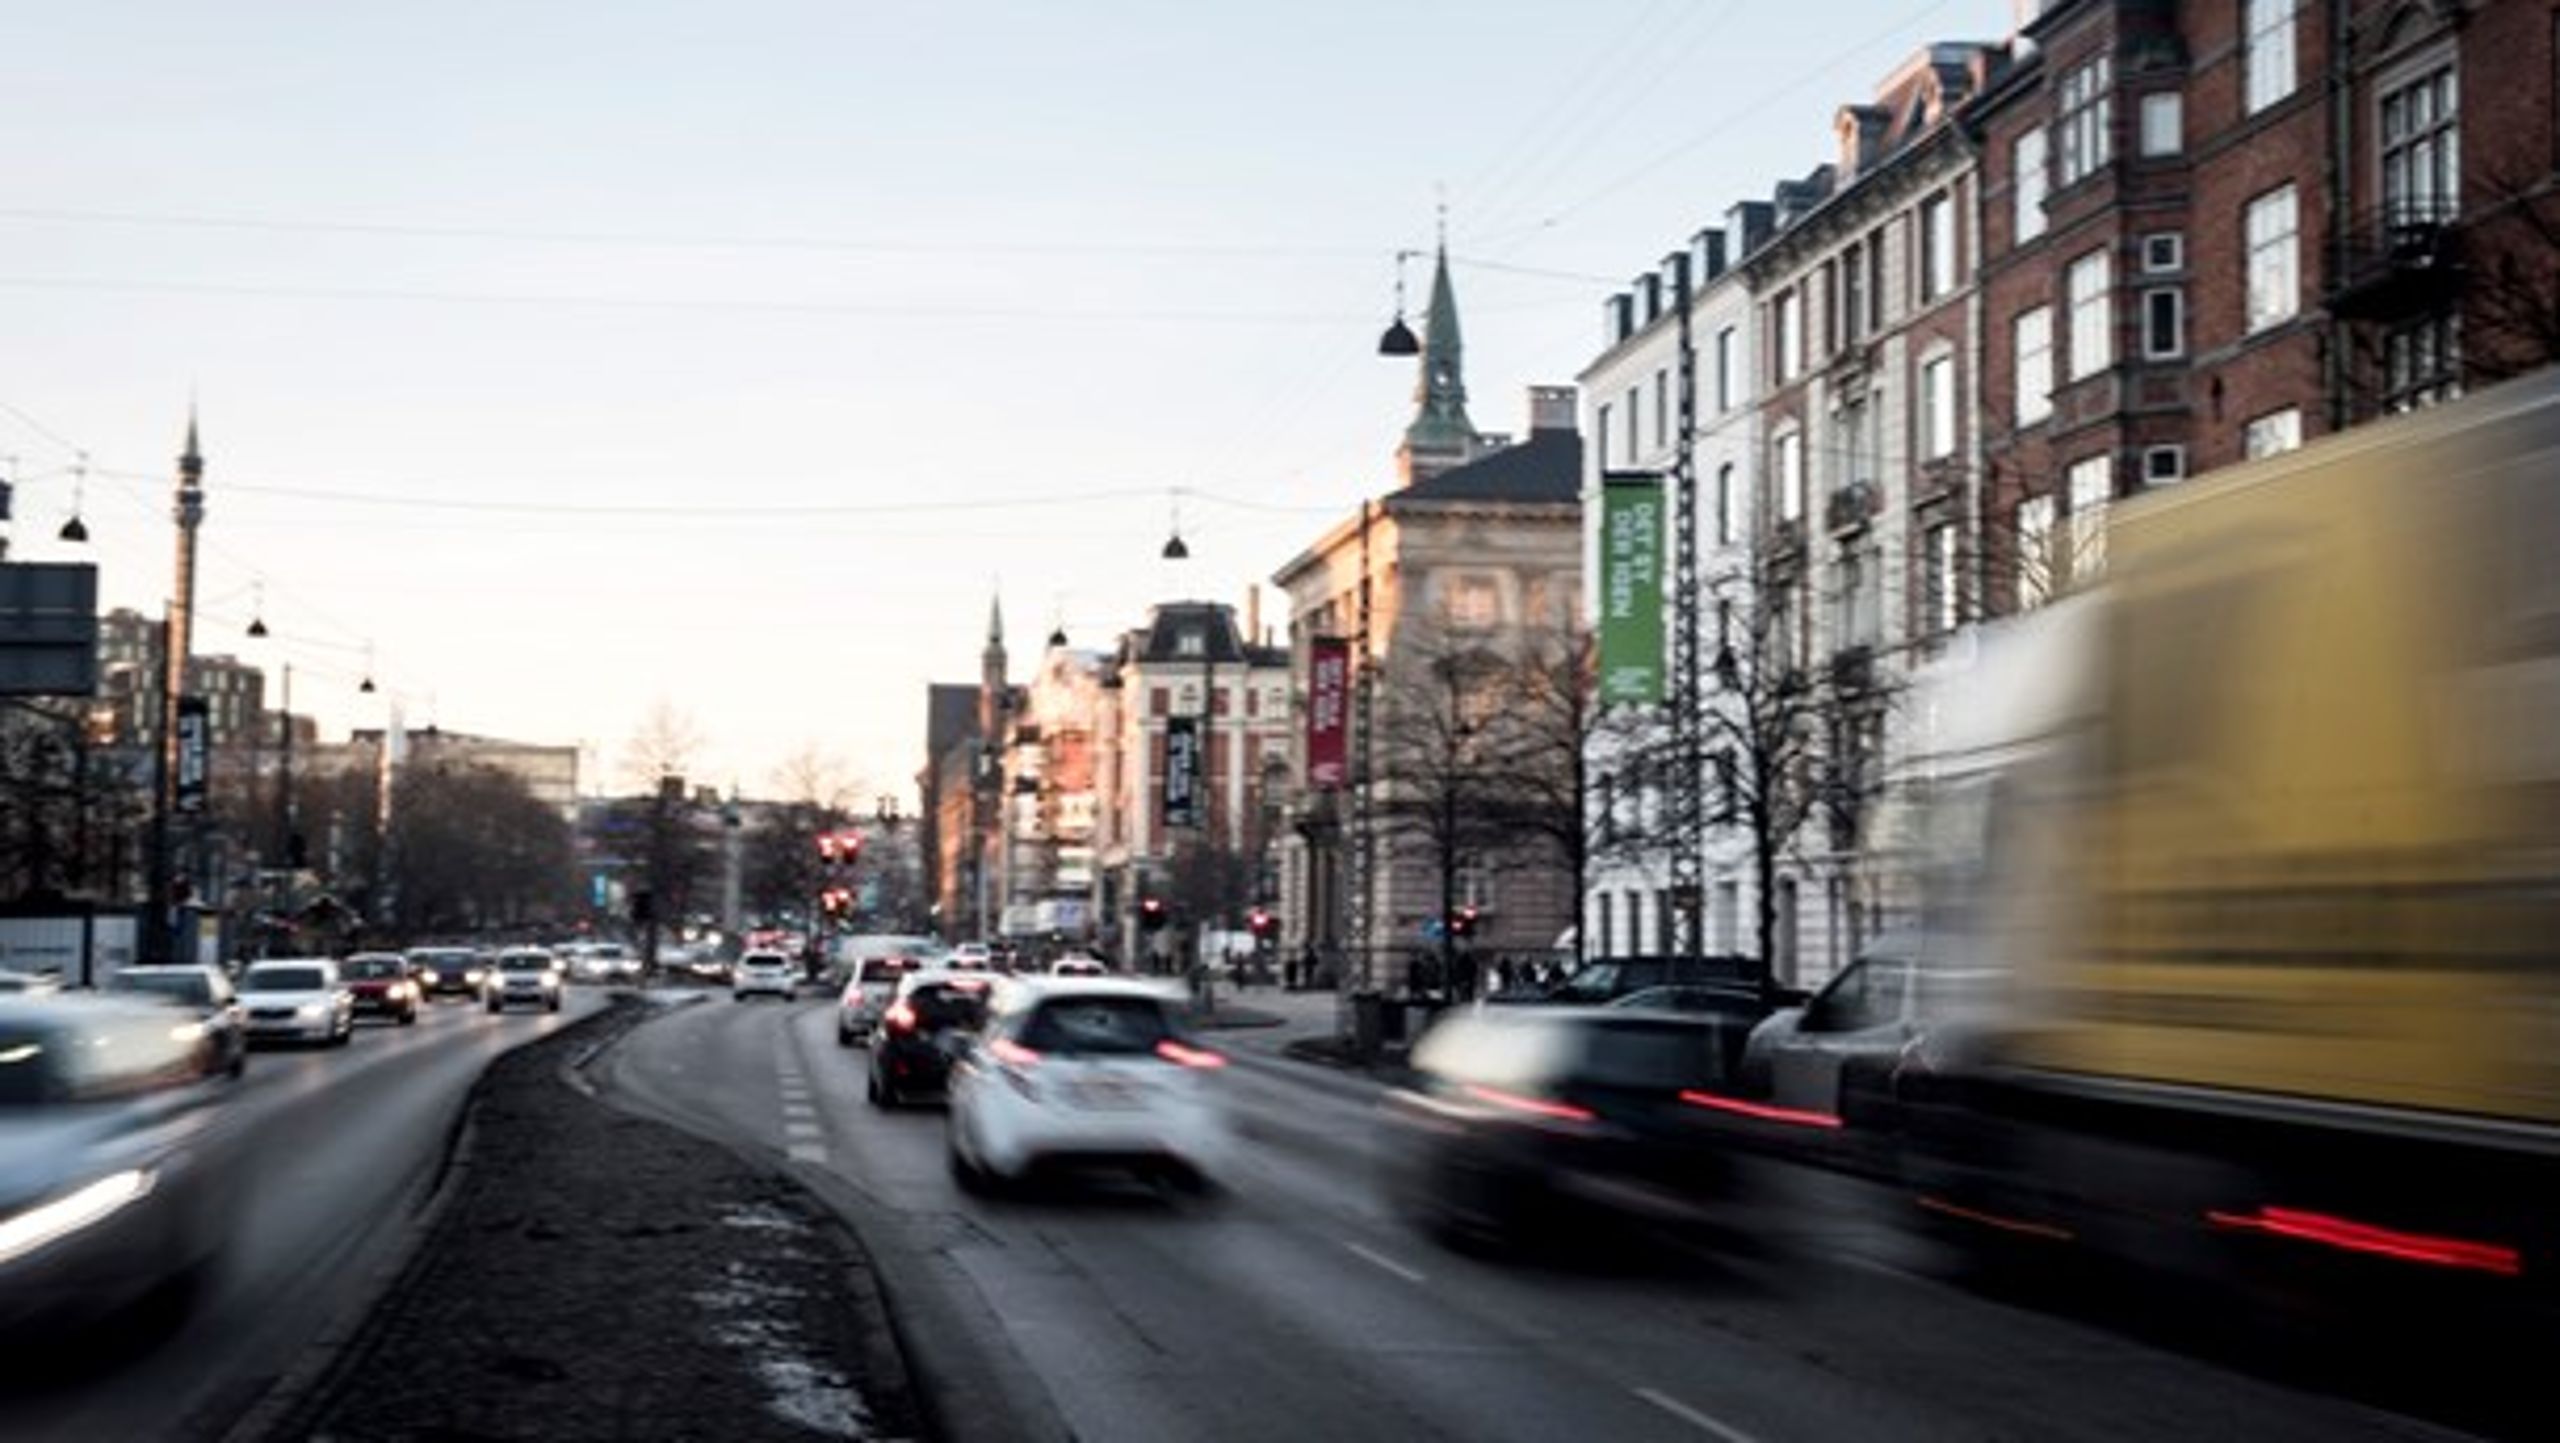 Byer som København vil gerne stille strengere krav til transportsektoren; men bliver bremset af nationale bestemmelser, skriver Jonathan Ries (ALT).